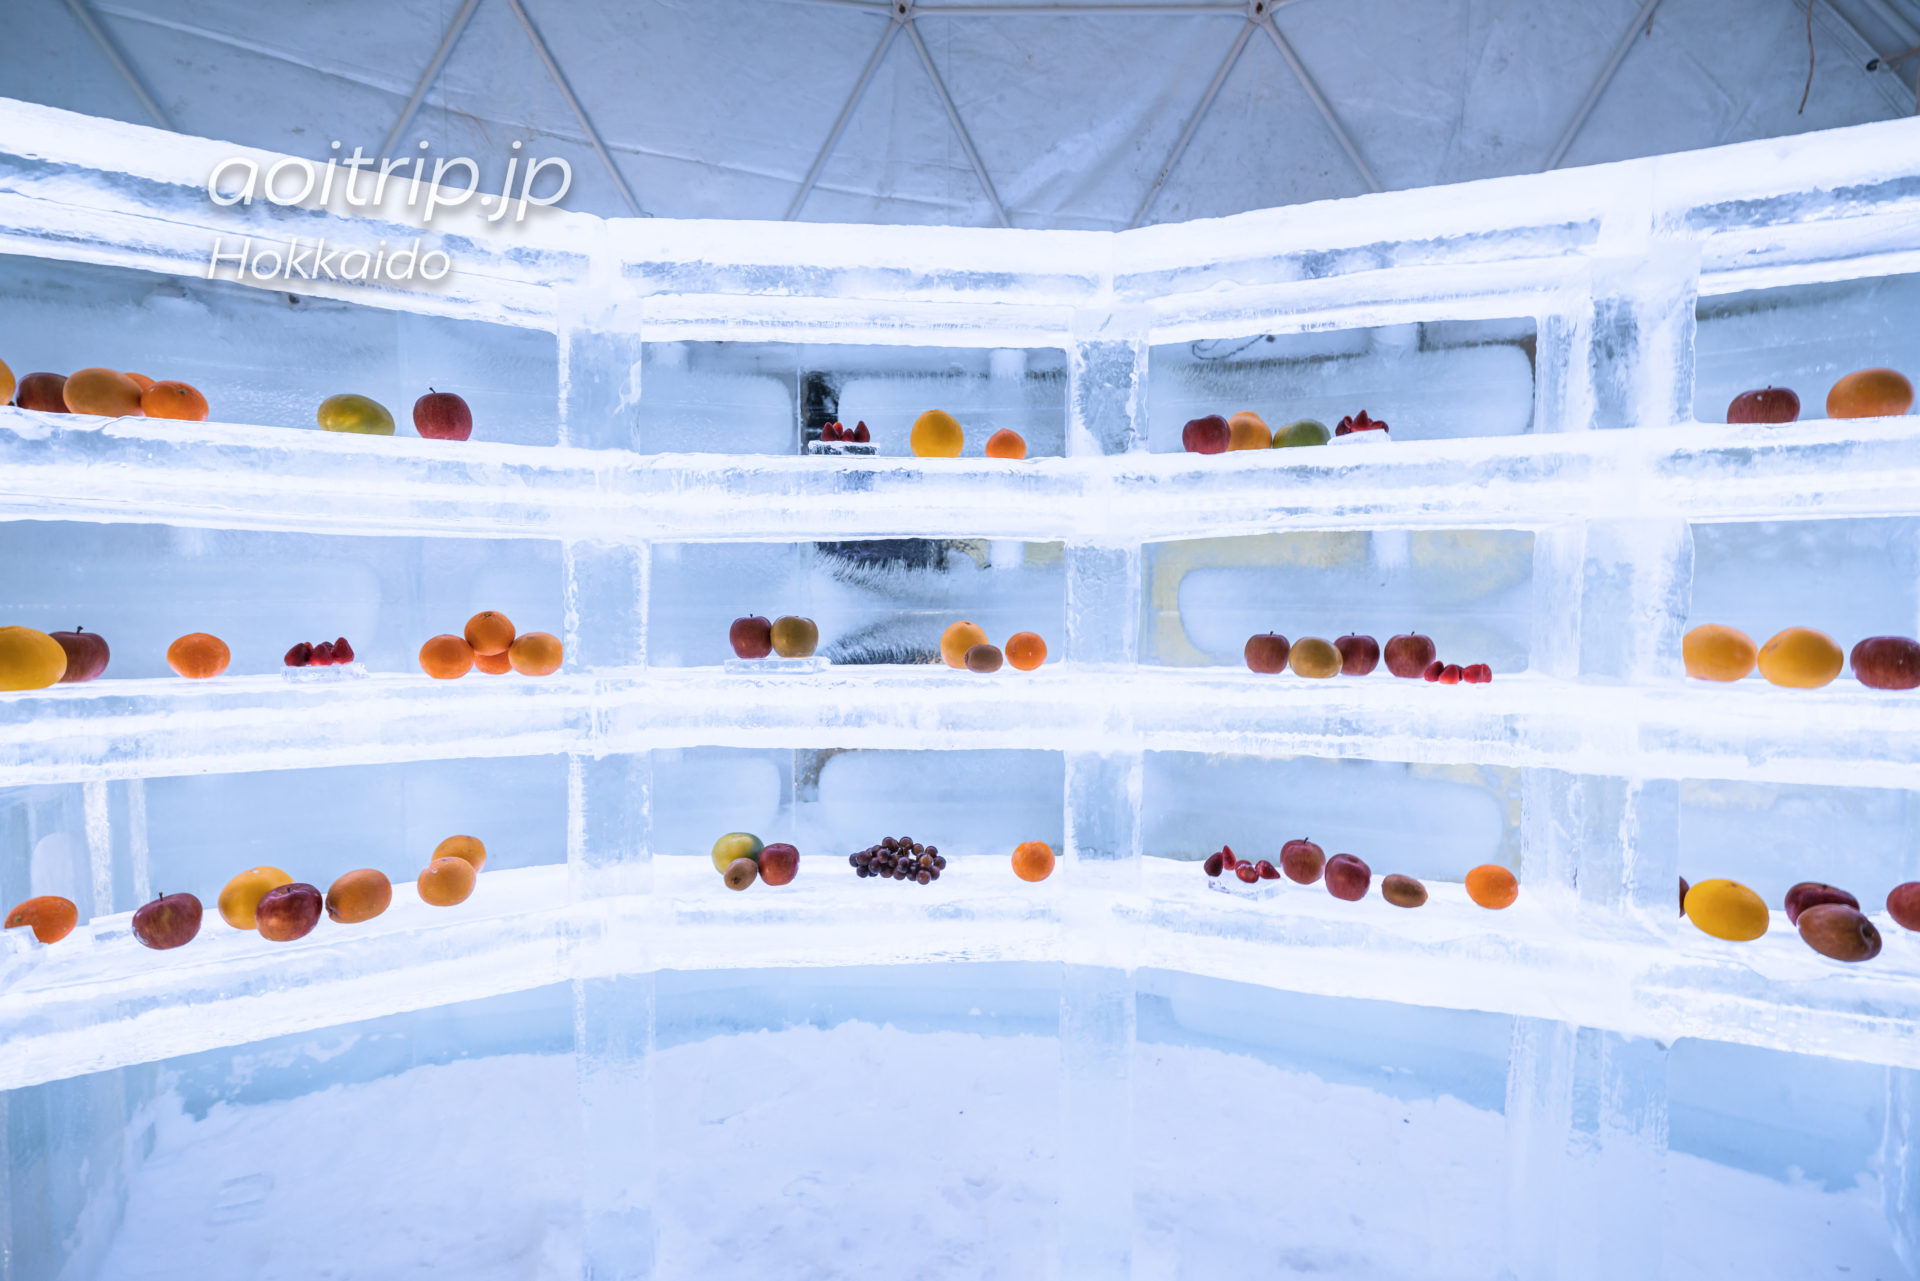 アイスヴィレッジの氷のフルーツショップ